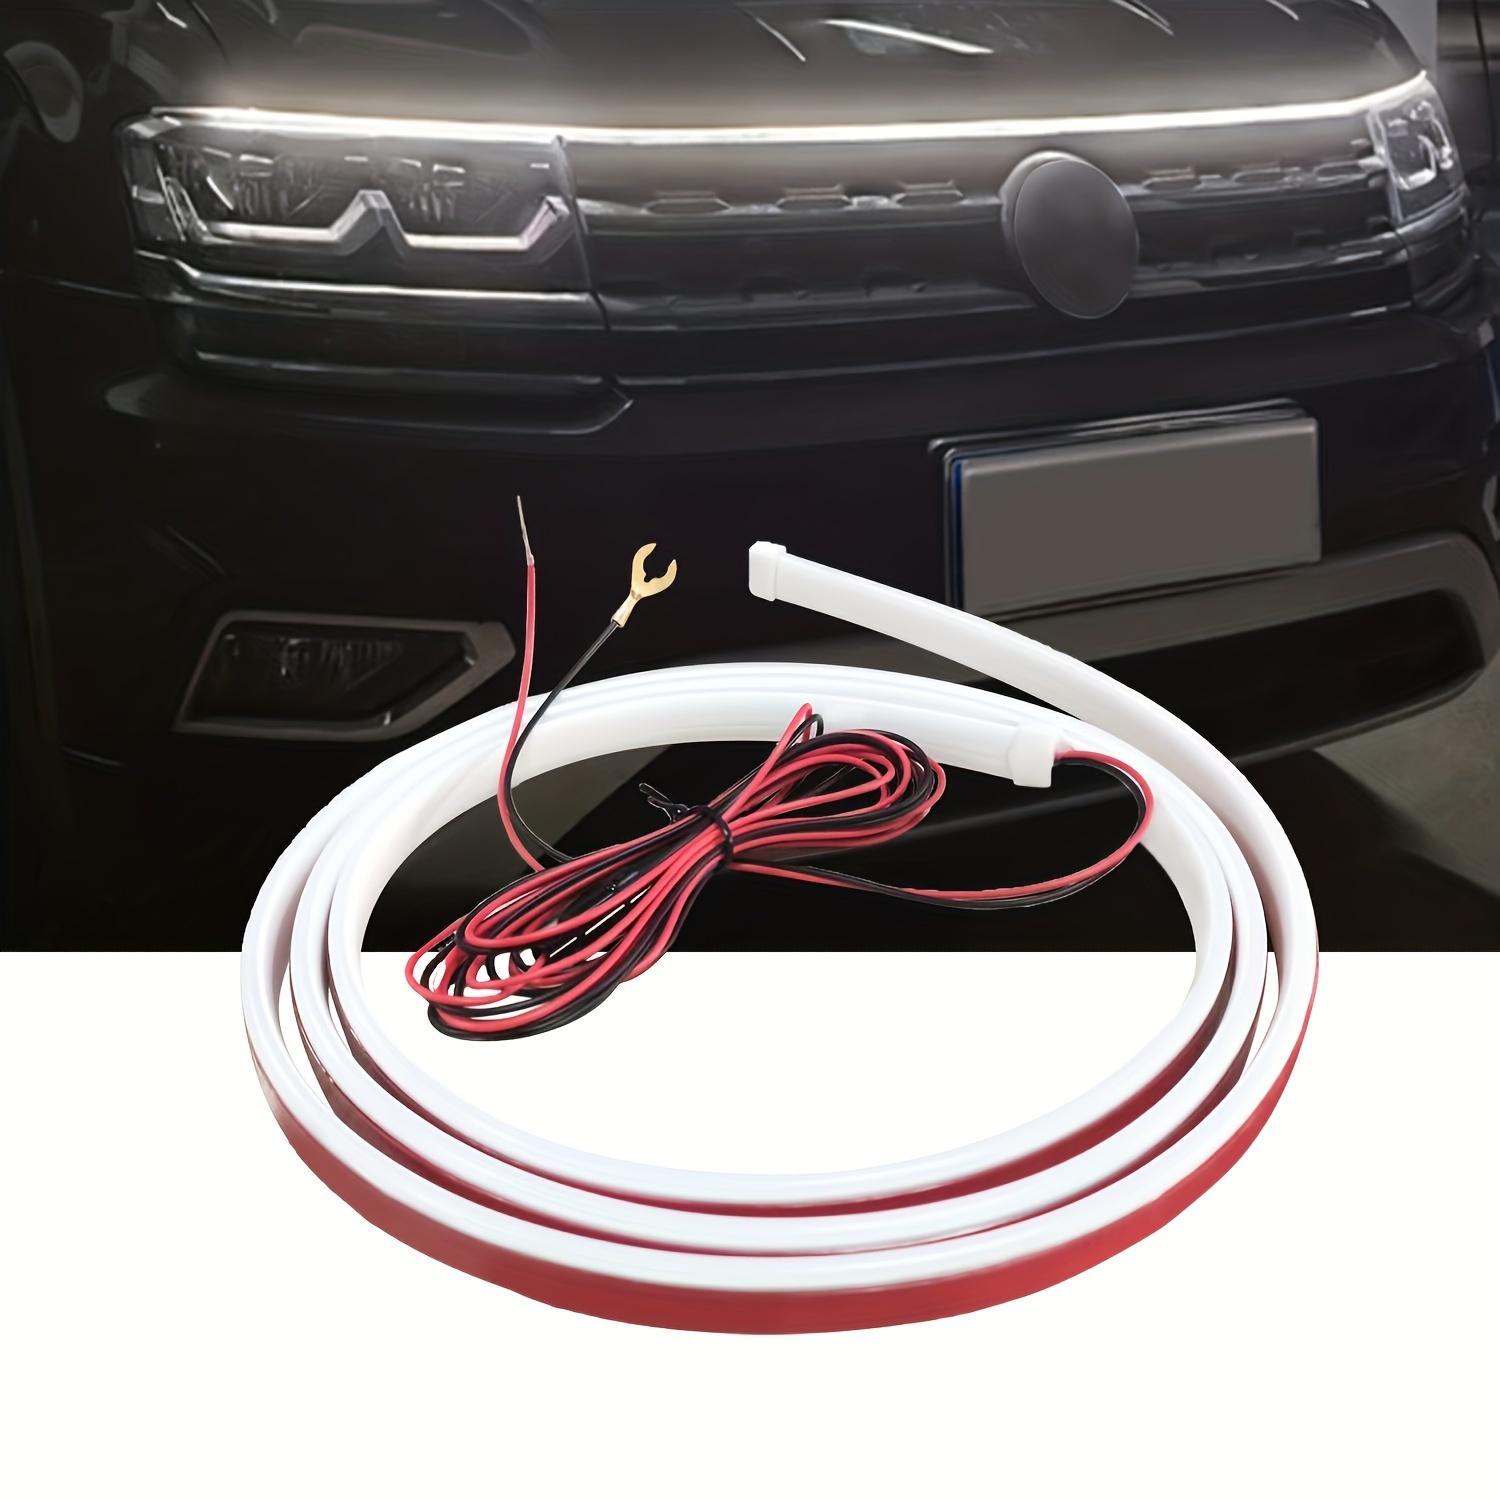 LED Auto Haube Atmosphäre Licht Streifen Wasserdichte Auto Außen